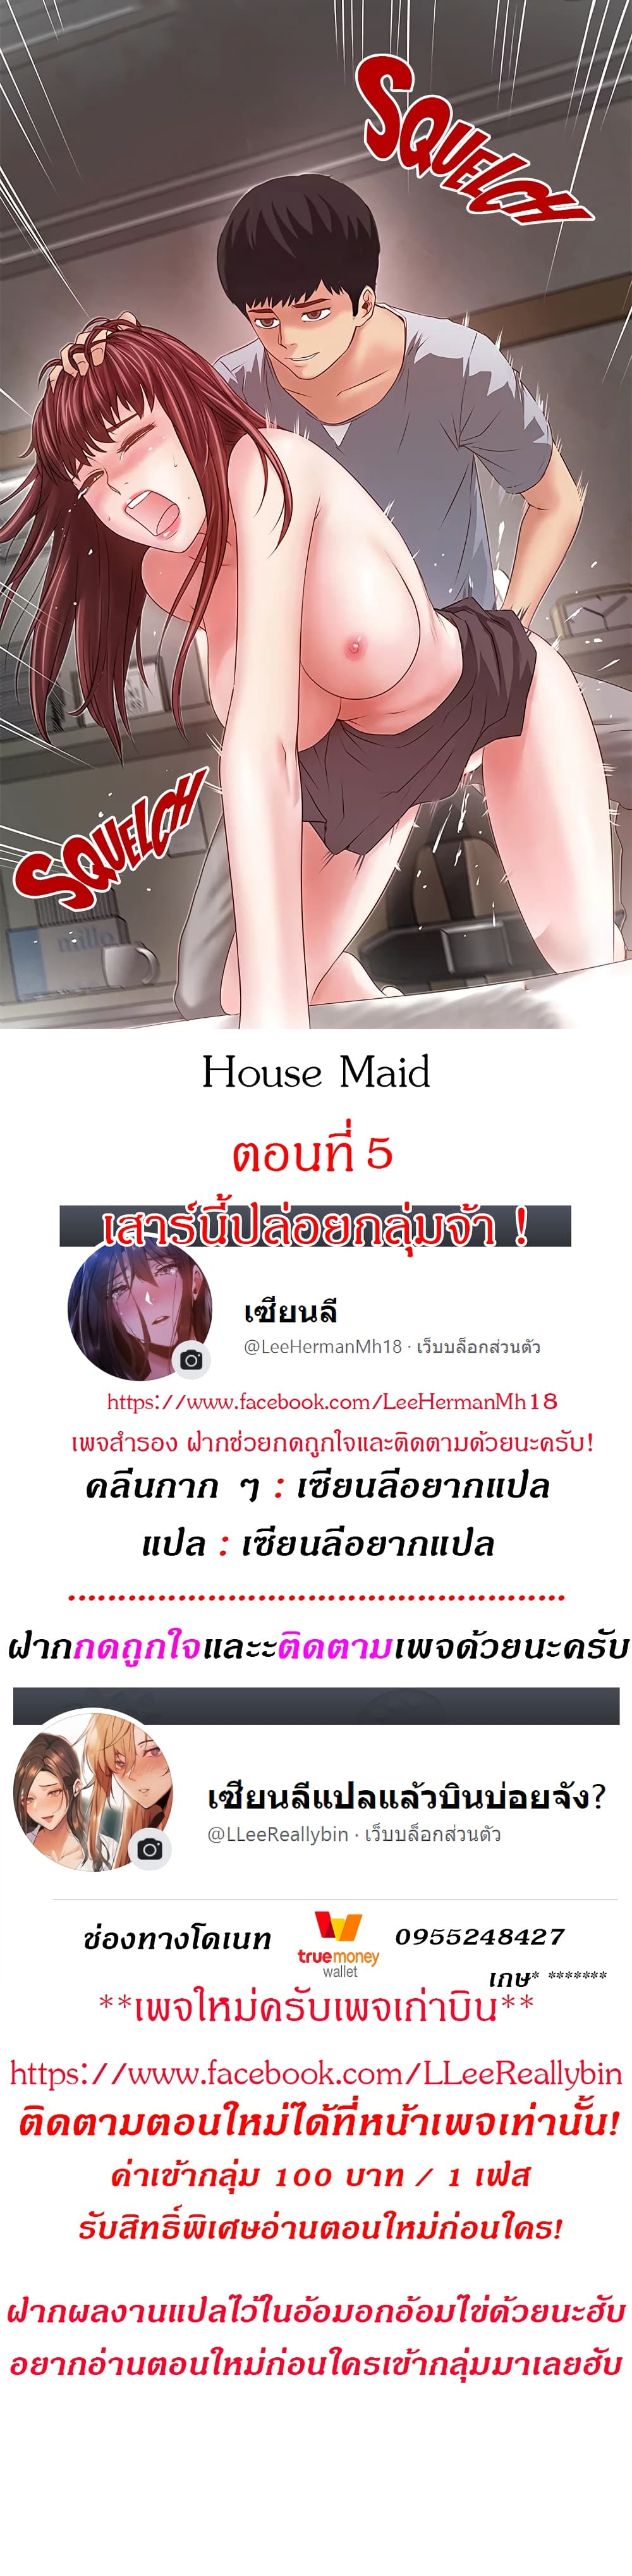 House Maid 5 (1)